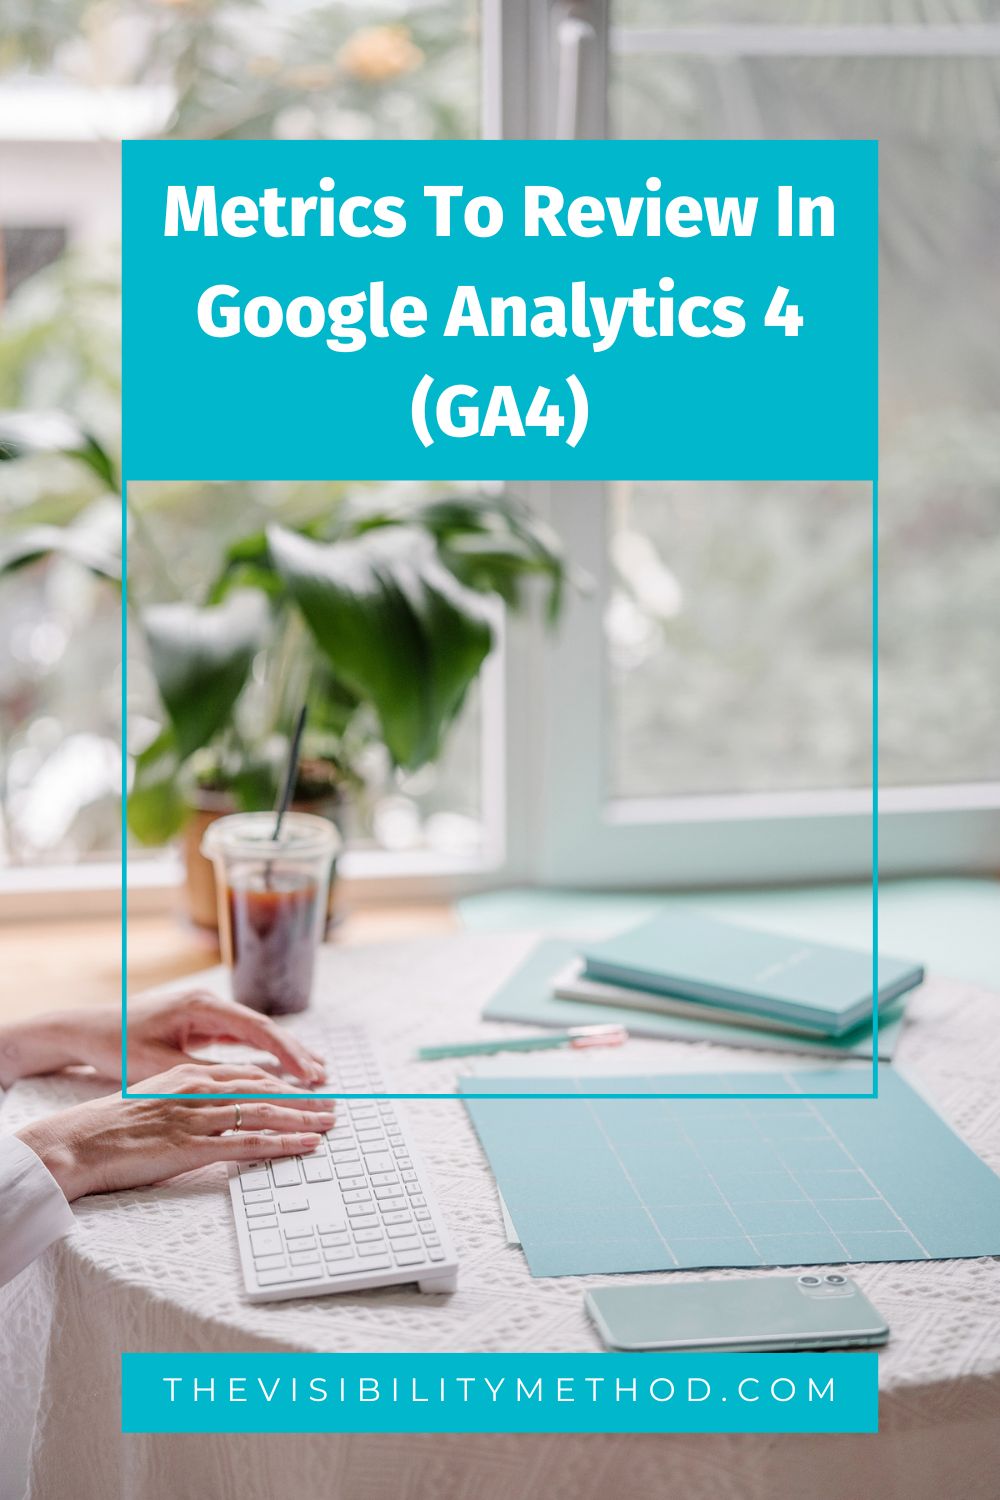 Metrics To Review In Google Analytics 4 (GA4)